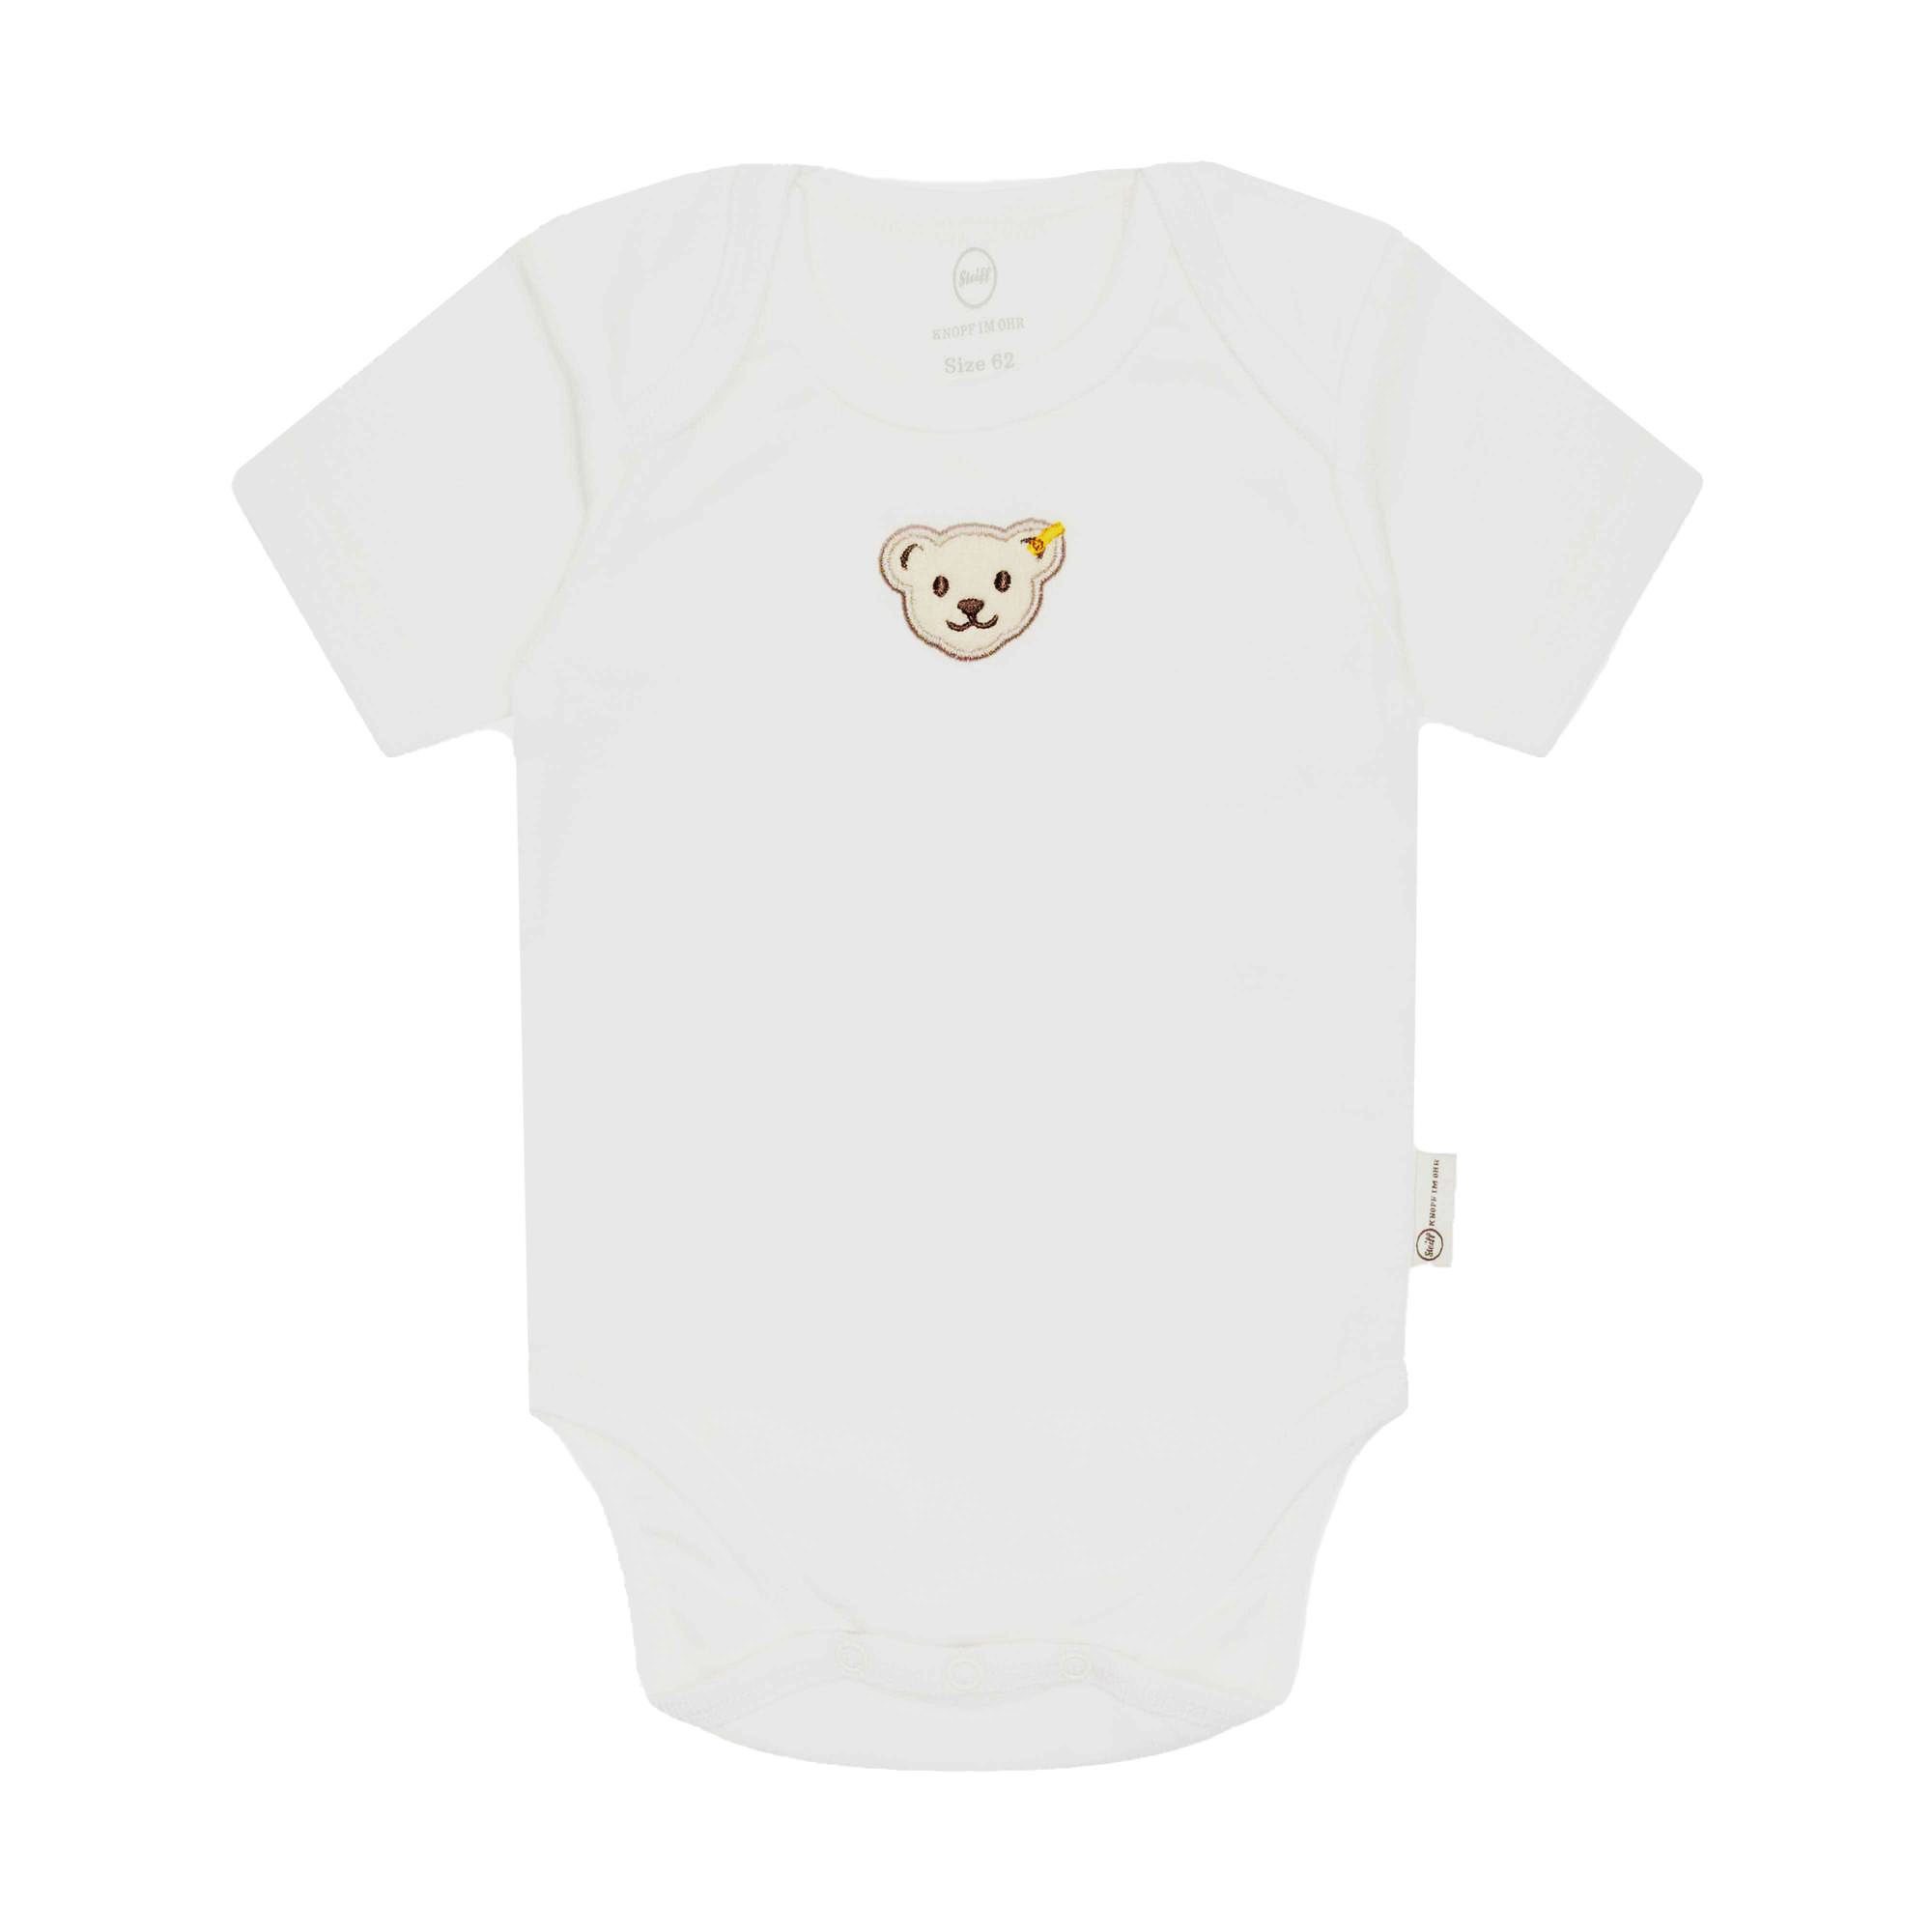 Steiff Strampler Baby Body - Strampler, Baumwolle, Weiß Logo Bär